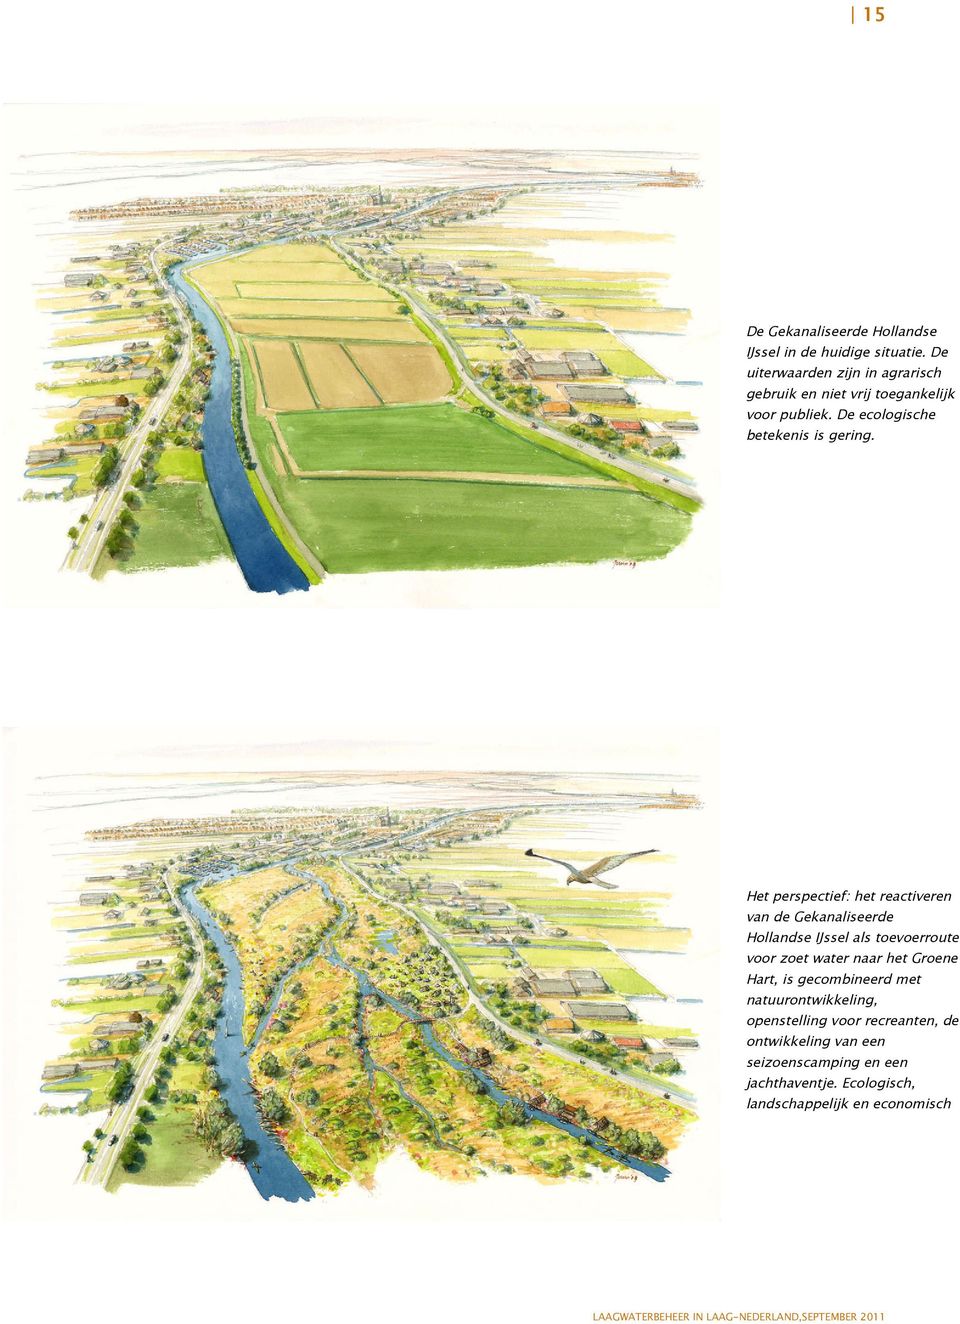 Het perspectief: het reactiveren van de Gekanaliseerde Hollandse IJssel als toevoerroute voor zoet water naar het